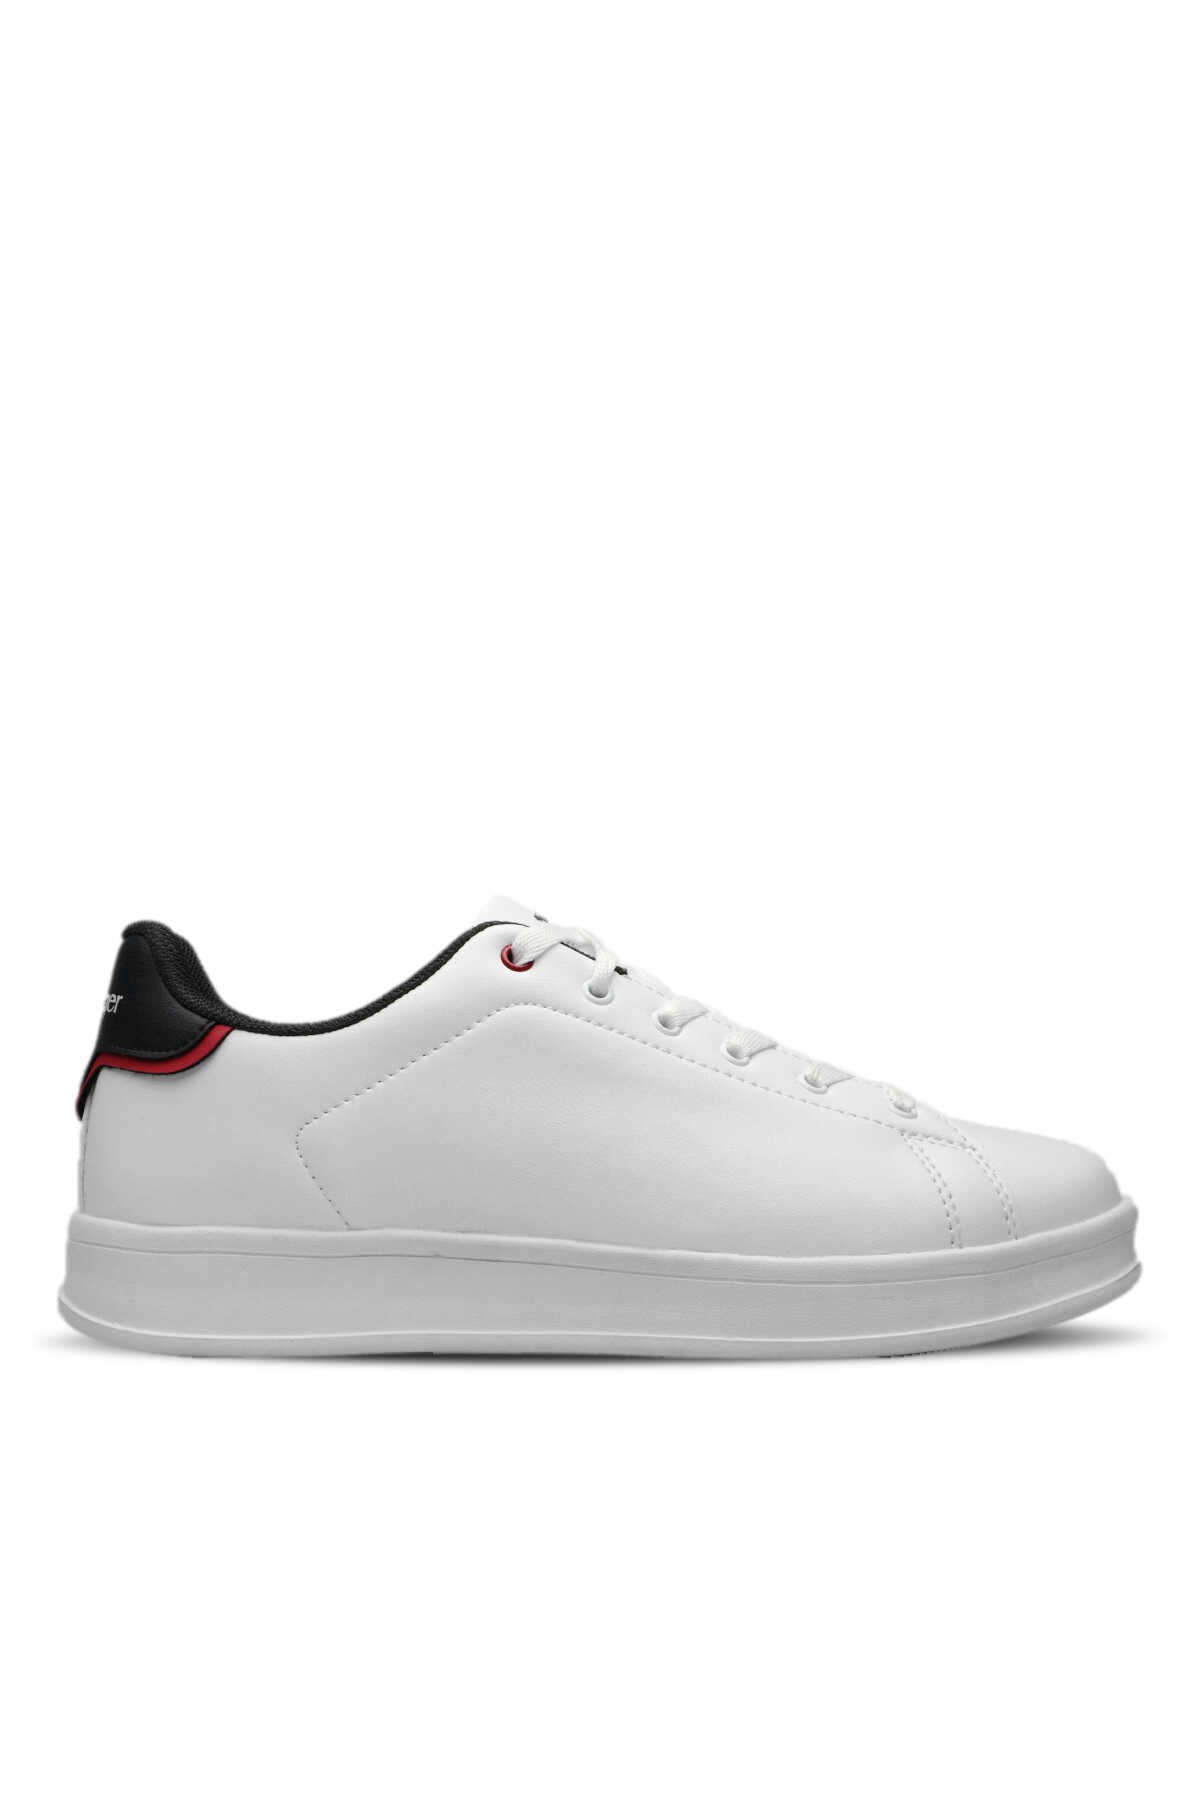 Slazenger - Slazenger ORFEO I Sneaker Erkek Ayakkabı Beyaz / Kırmızı